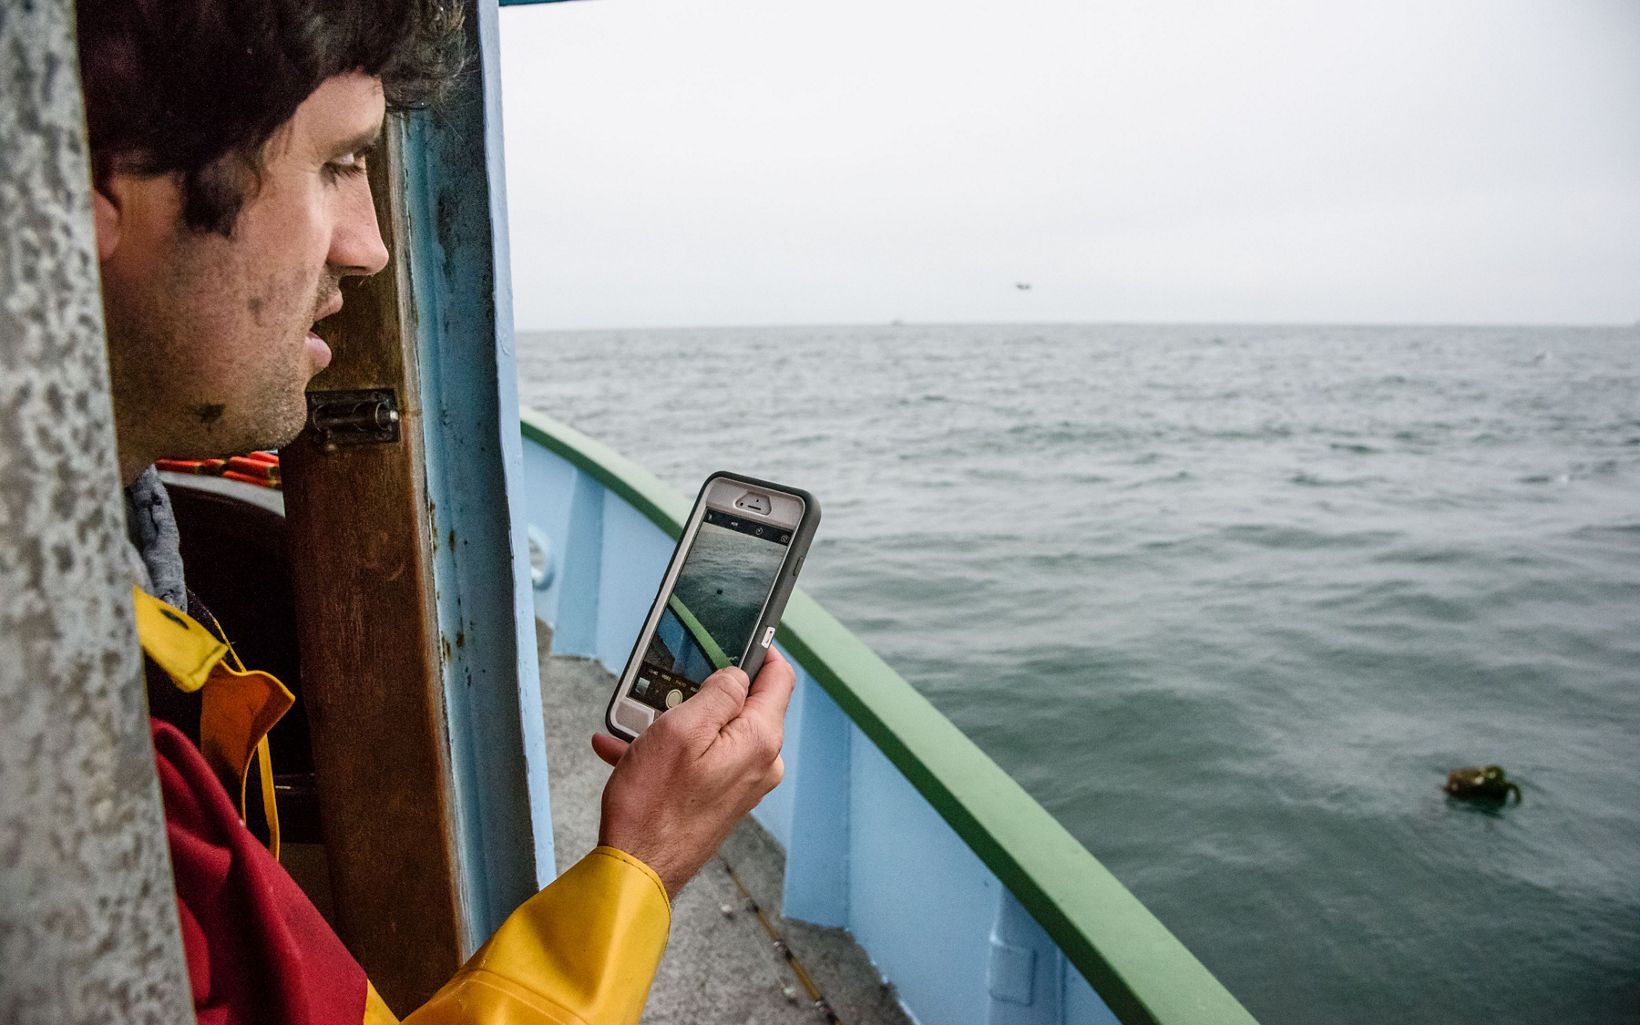 RECUPERACIÓN DE APAREJOS PERDI TNC ha desarrollado una herramienta informática que permite a los pescadores utilizar sus teléfonos inteligentes para registrar la ubicación de los aparejos encontrados. © David Hills Photography